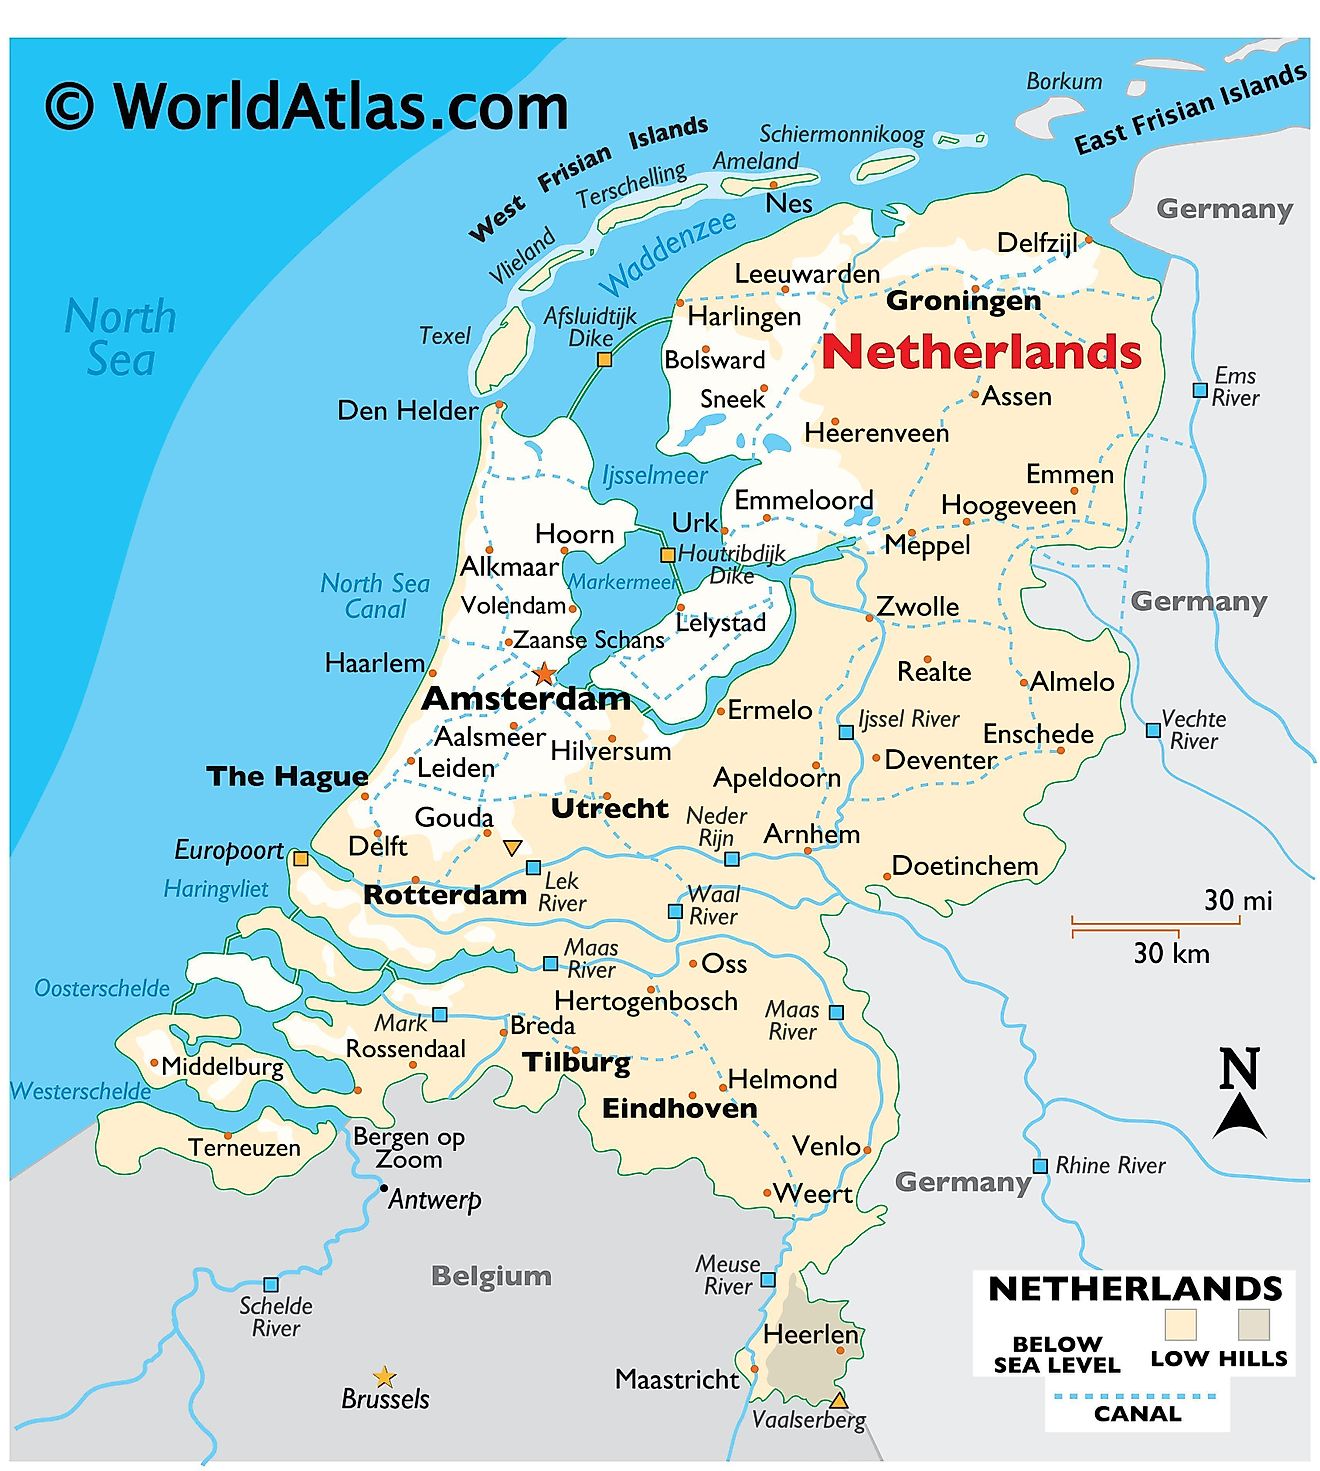 Mapa Físico da Holanda mostrando relevo, fronteiras internacionais, grandes rios, pontos extremos, cidades importantes, ilhas, etc.